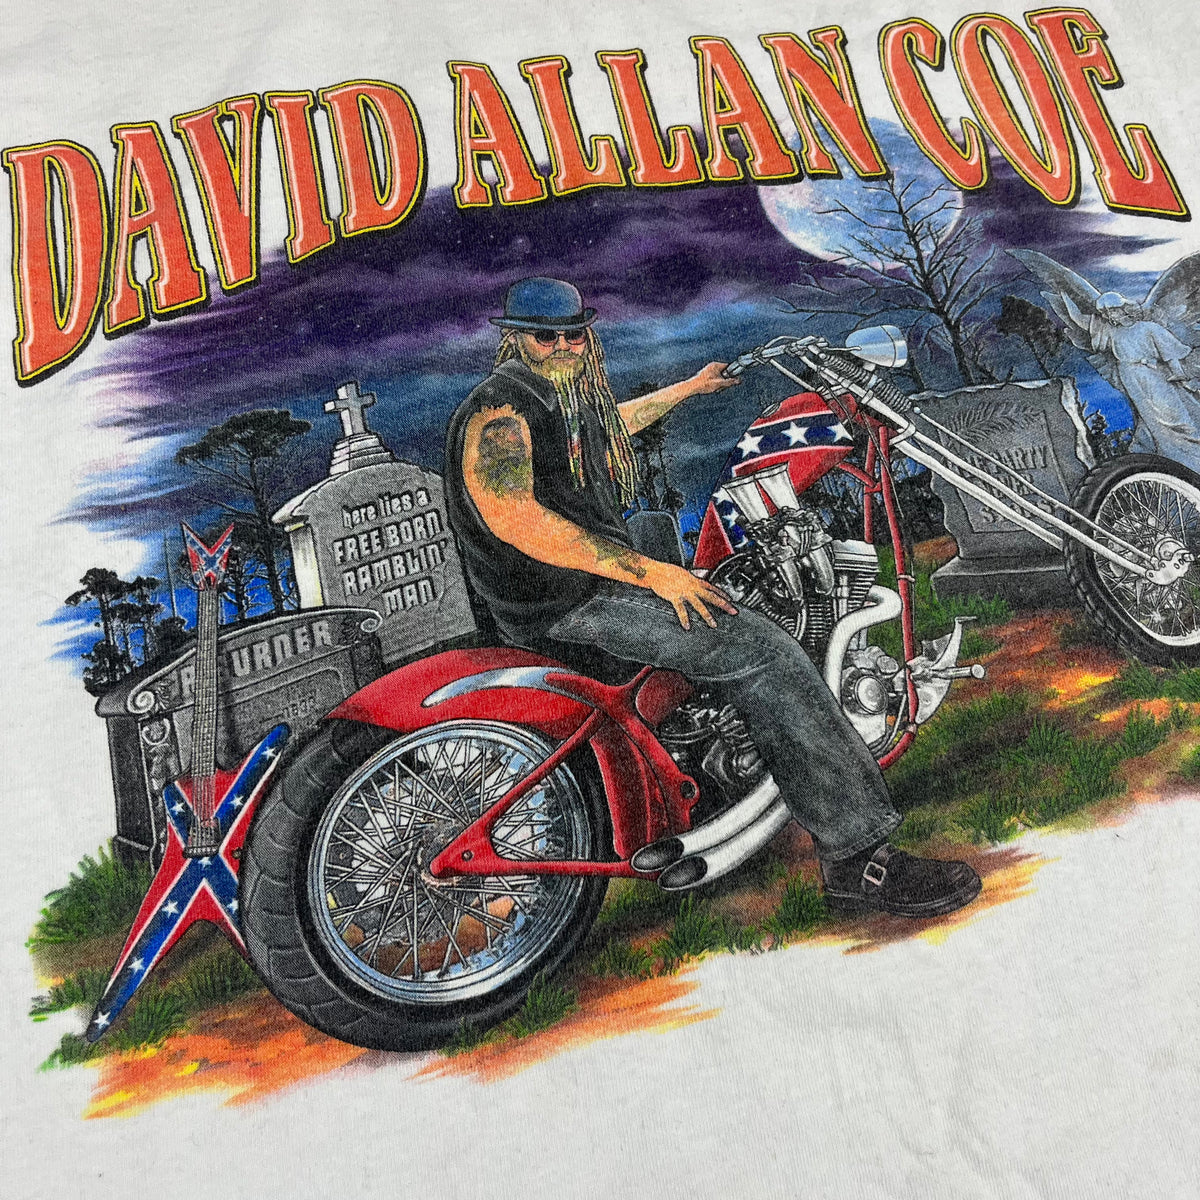 Vintage David Allan Coe &quot;World Tour&quot; T-Shirt